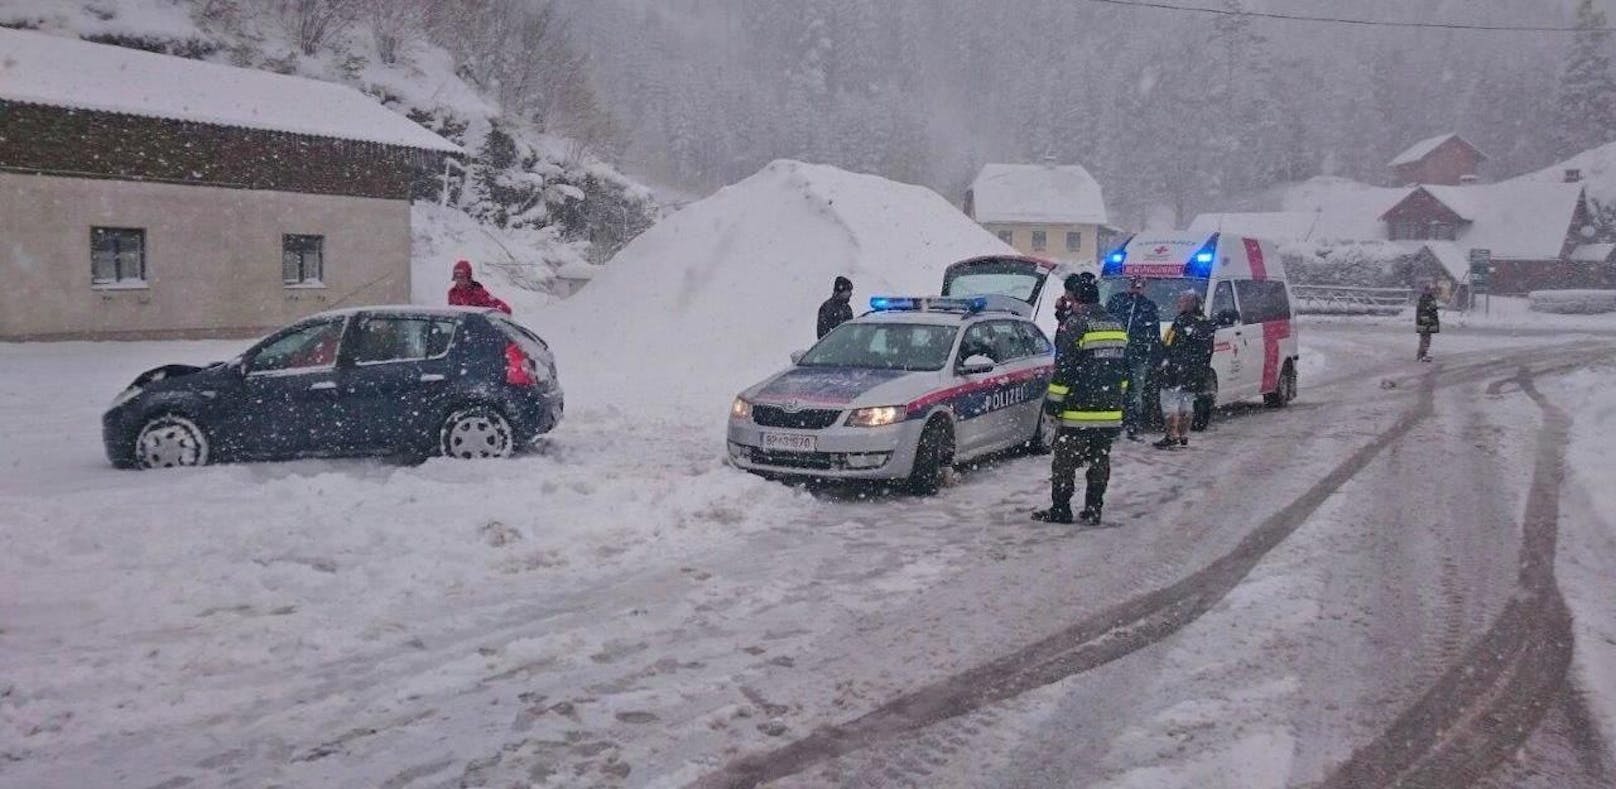 Winter in Teilen von NÖ: Bei Nasswald krachten zwei Fahrzeuge zusammen.